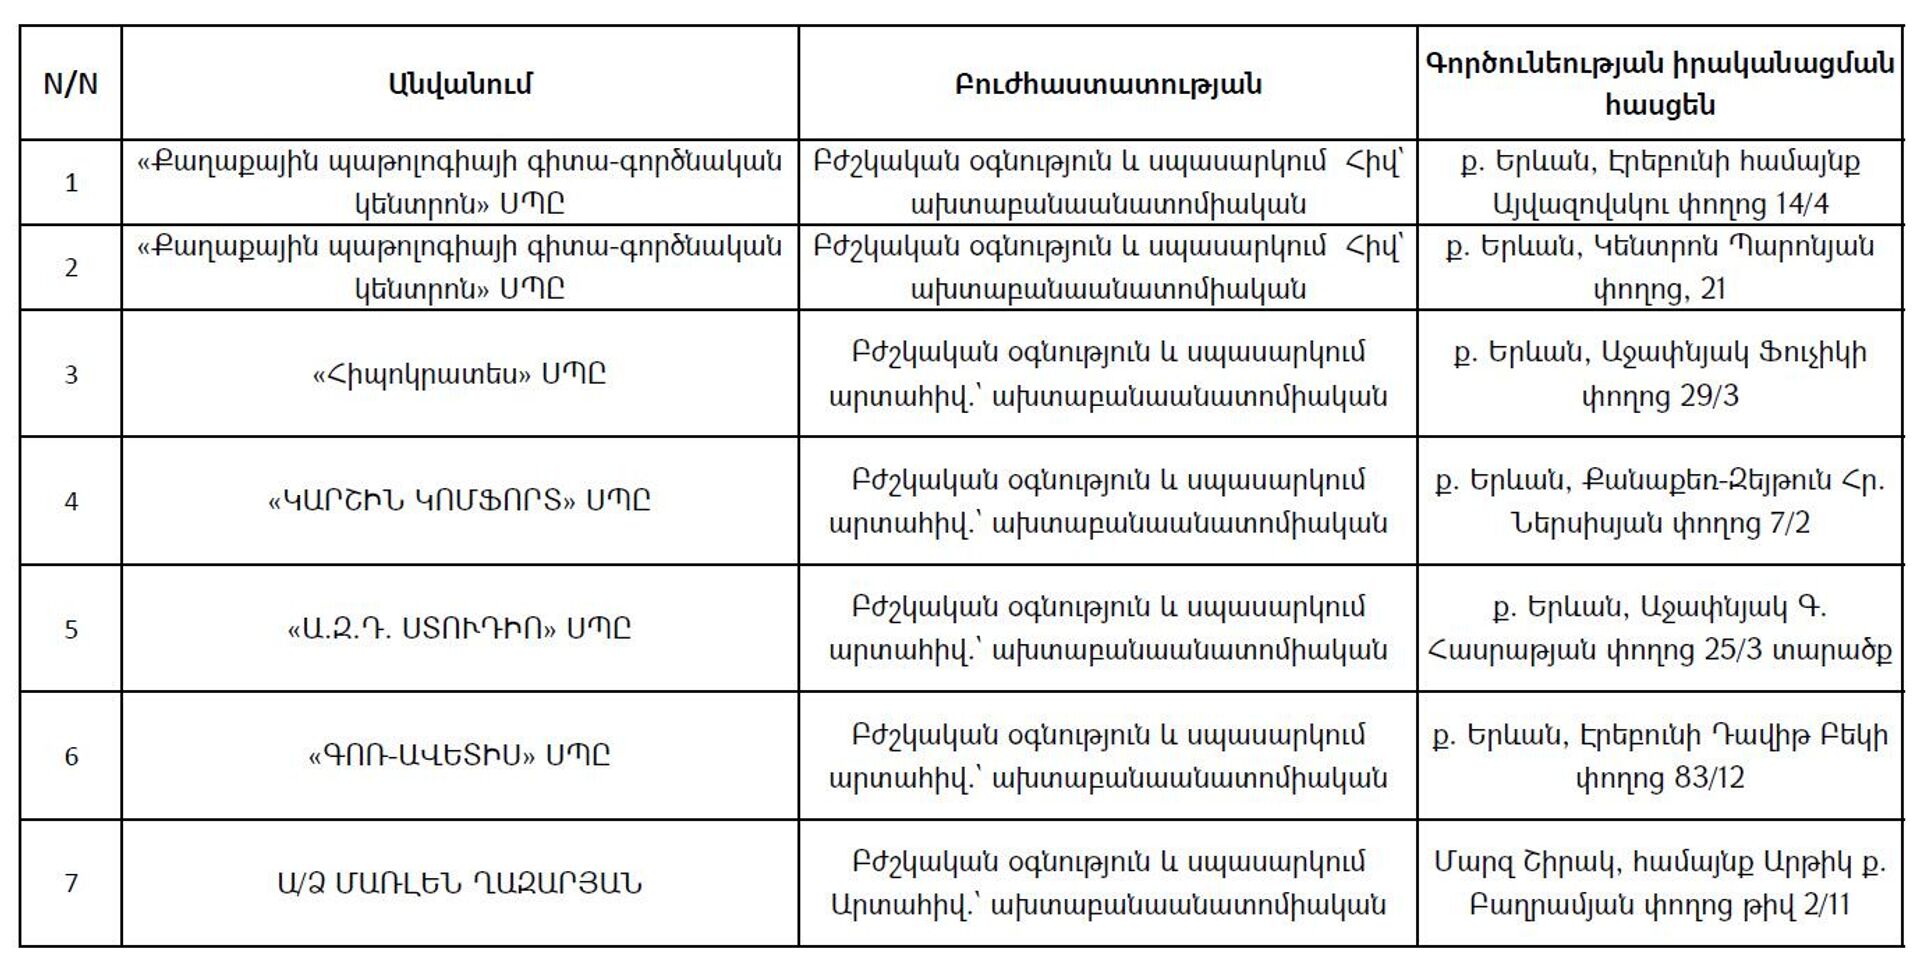 Список частных моргов, предоставленных министерством здравоохранения РА по состоянию на 29 марта 2022 года - Sputnik Армения, 1920, 15.04.2022